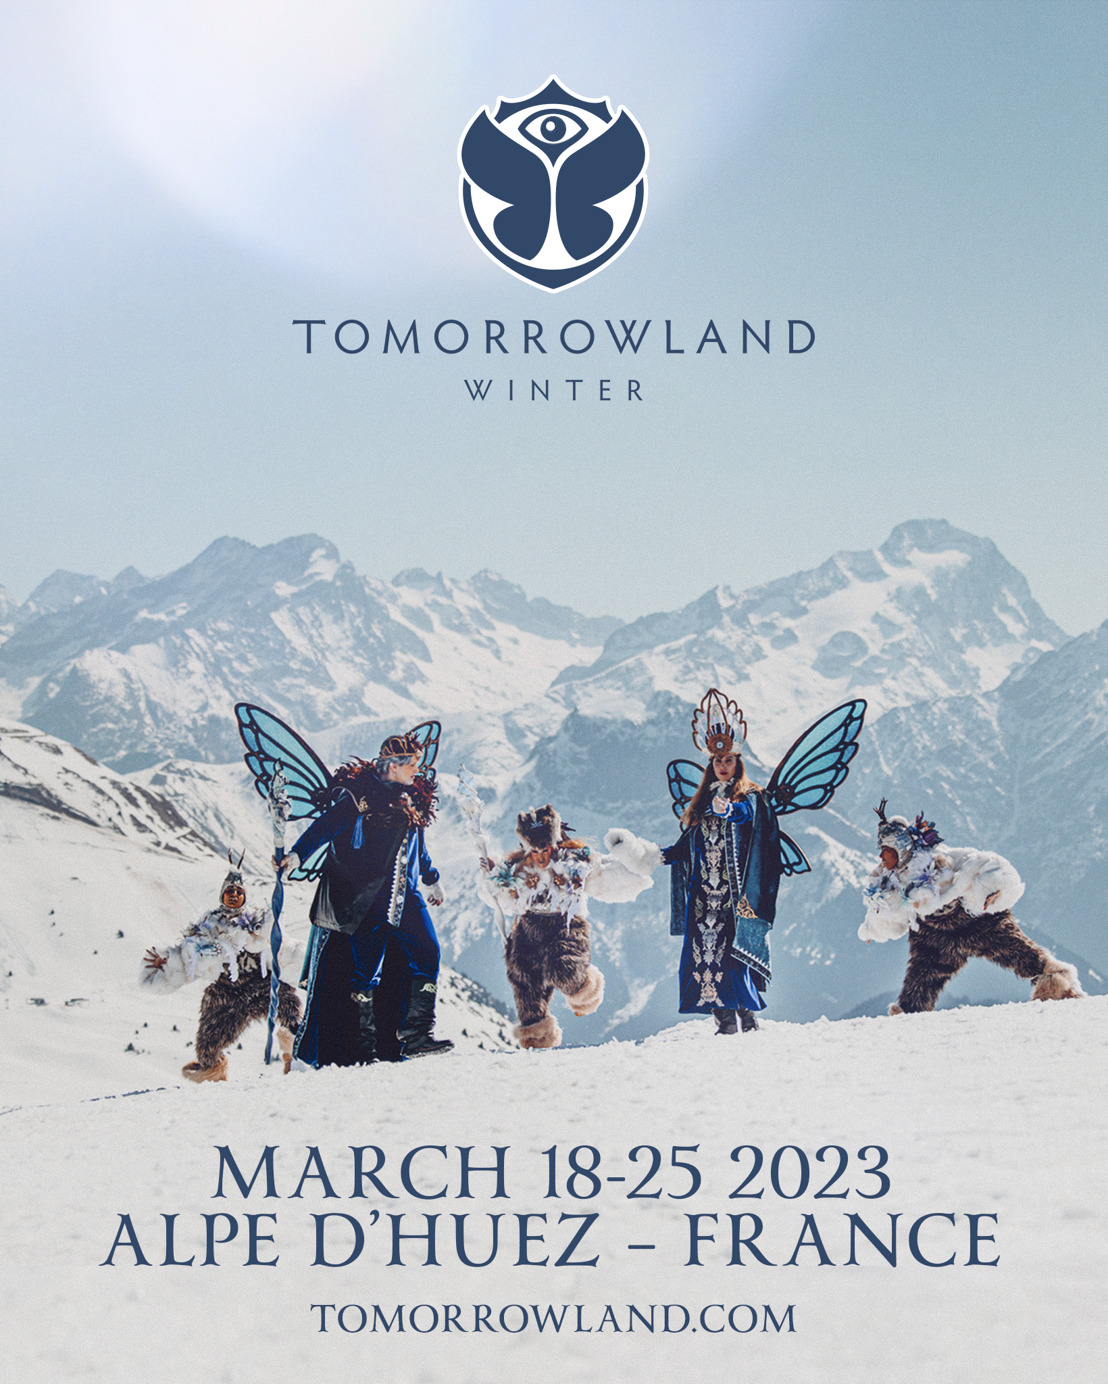 Beleef de ultieme wintersportvakantie en festivalervaring op Tomorrowland Winter 2023